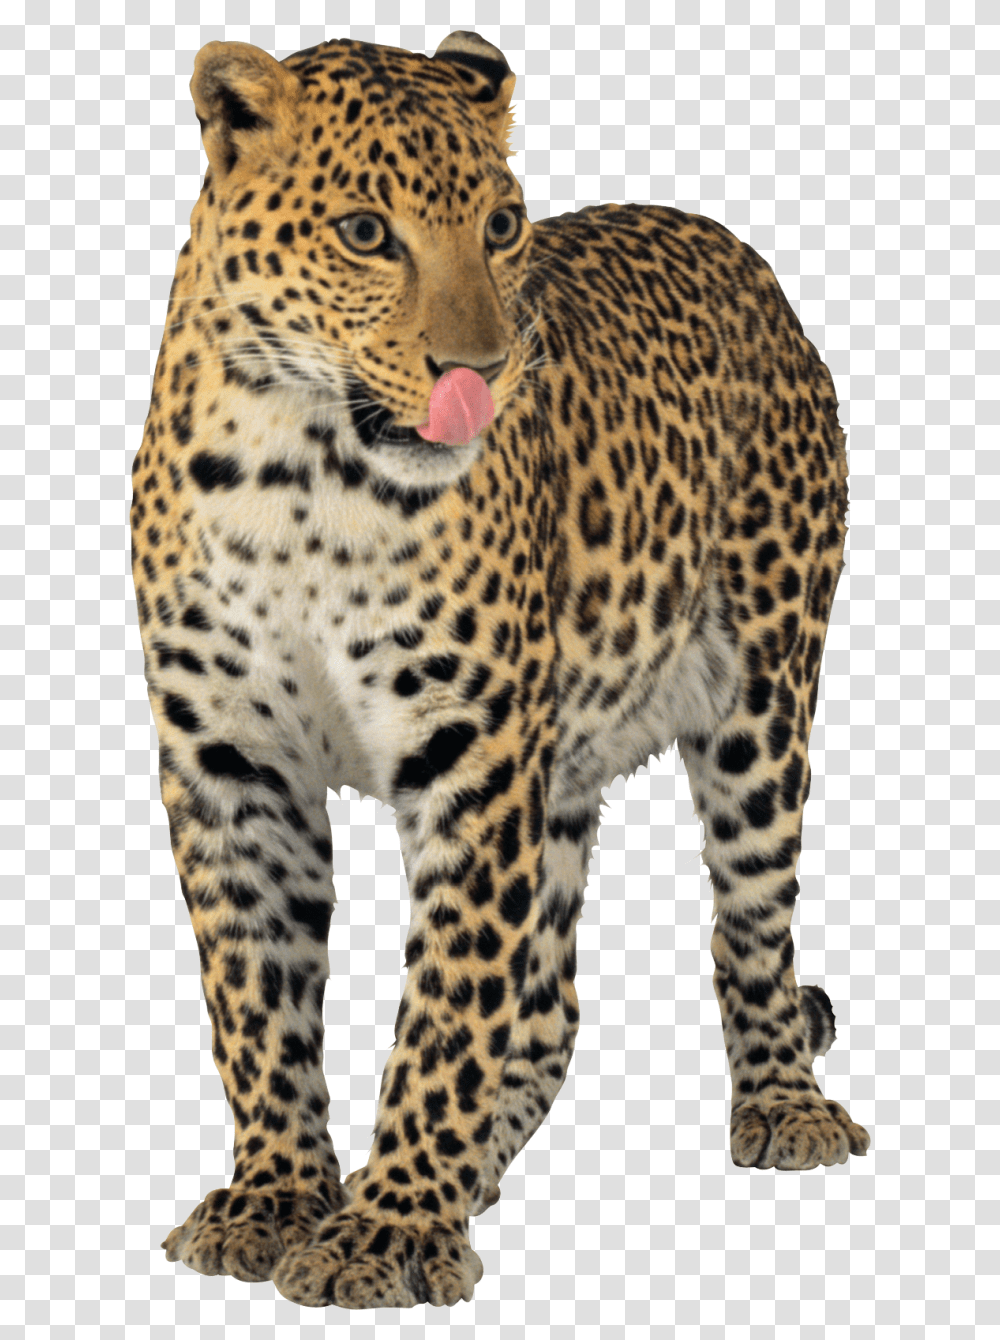 Jaguar Images Free Jaguar, Panther, Wildlife, Mammal, Animal Transparent Png